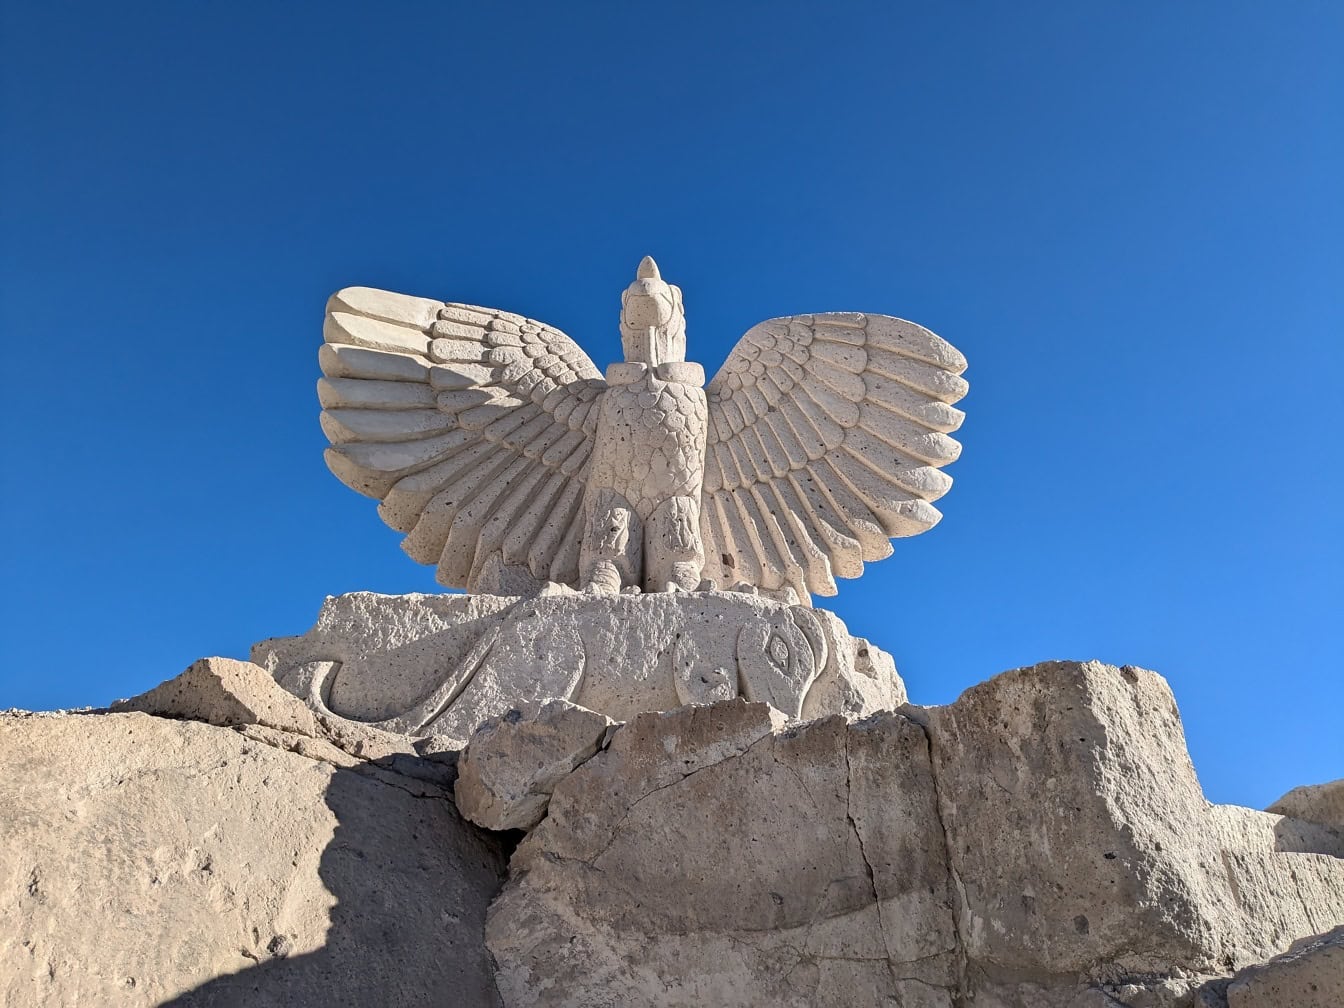 페루 아레키파(Arequipa)의 쿨레브릴라스(Culebrillas) 협곡 근처 실라르(Sillar) 루트에 있는 날개를 활짝 펼친 아름다운 새 동상